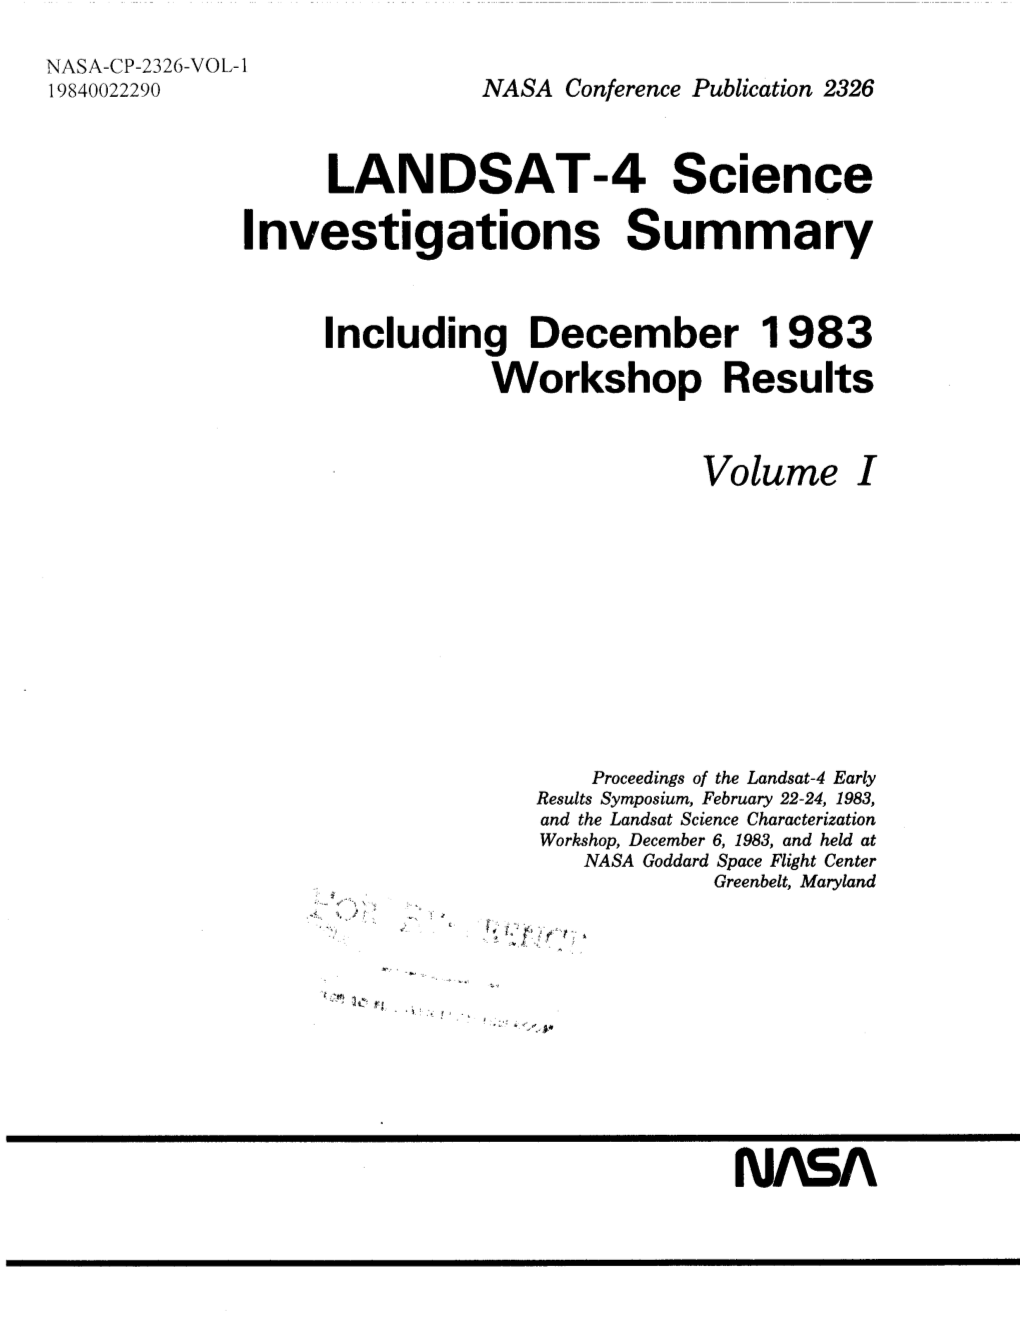 LANDSAT-4 Science Investigations Summary